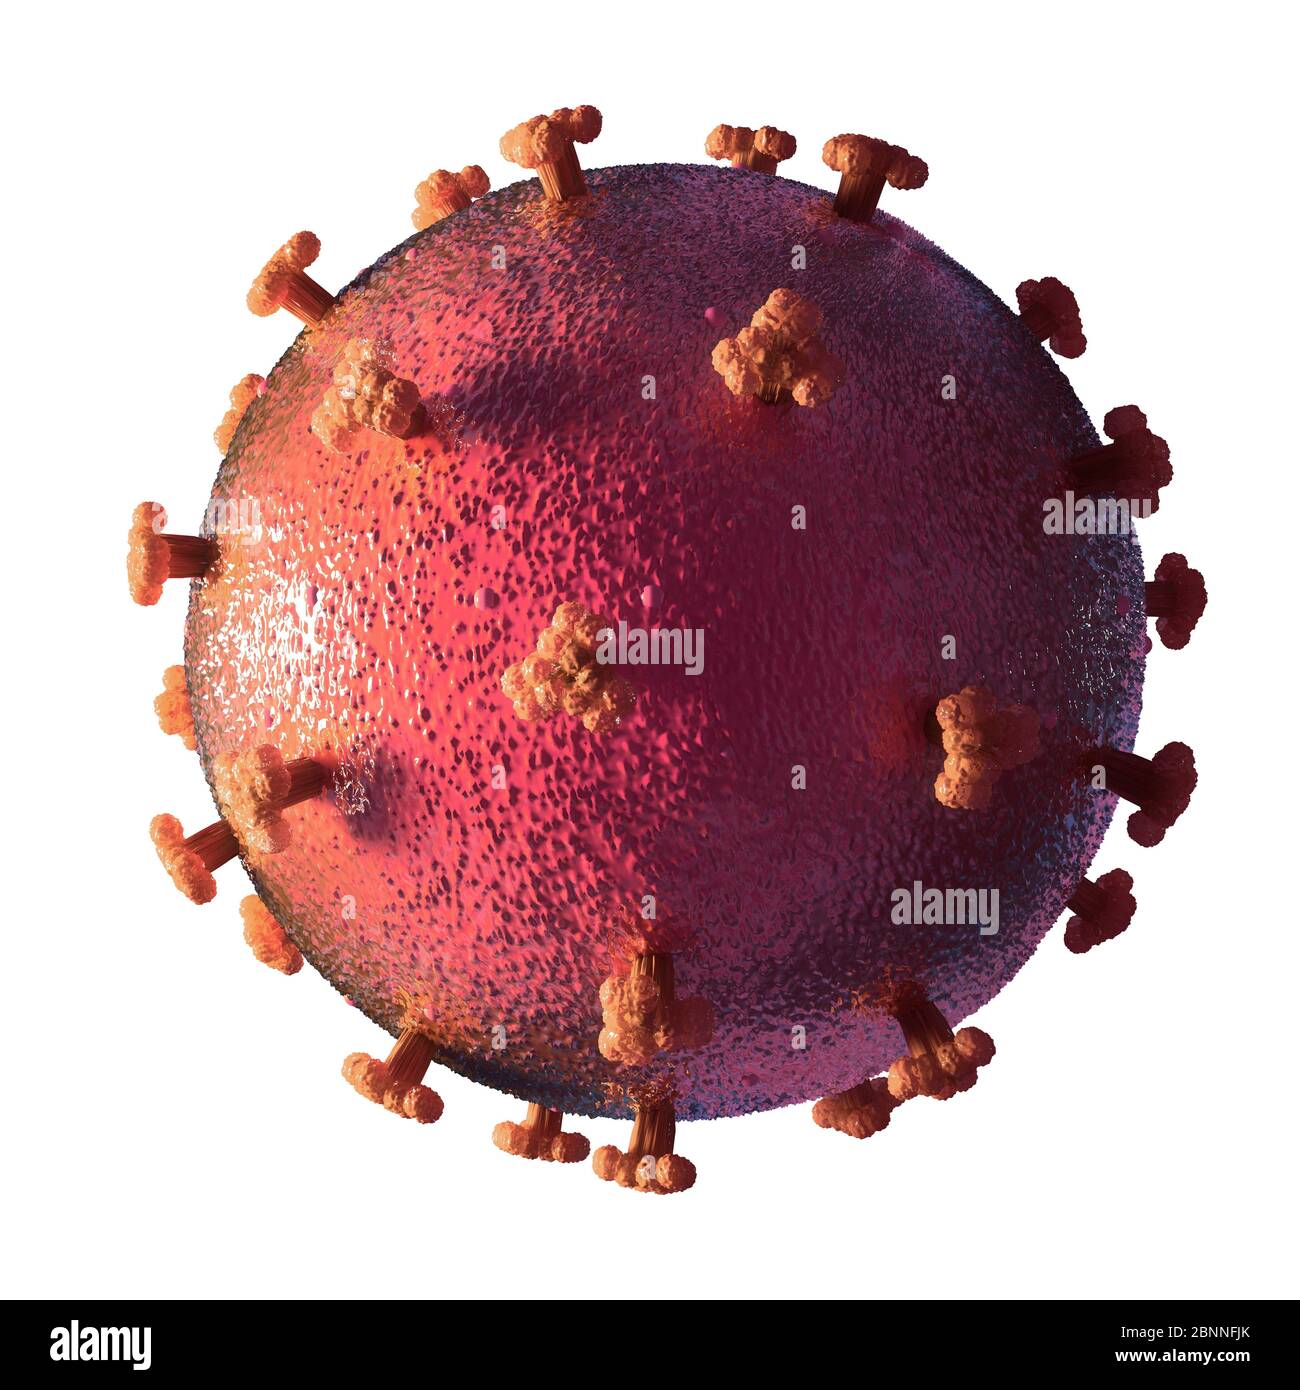 Illustrazione di un coronavirus, la causa della nuova malattia covid-19. Questa malattia è stata scoperta per la prima volta a Wuhan, in Cina, nel dicembre 2019. E' contagiosa e da allora si è diffusa rapidamente in tutto il mondo. La malattia causa febbre, tosse e respiro corto, e può portare a polmonite fatale in alcuni casi. SARS-COV-2 è un virus RNA che utilizza picchi proteici per ottenere l'ingresso nelle cellule ospiti. Foto Stock